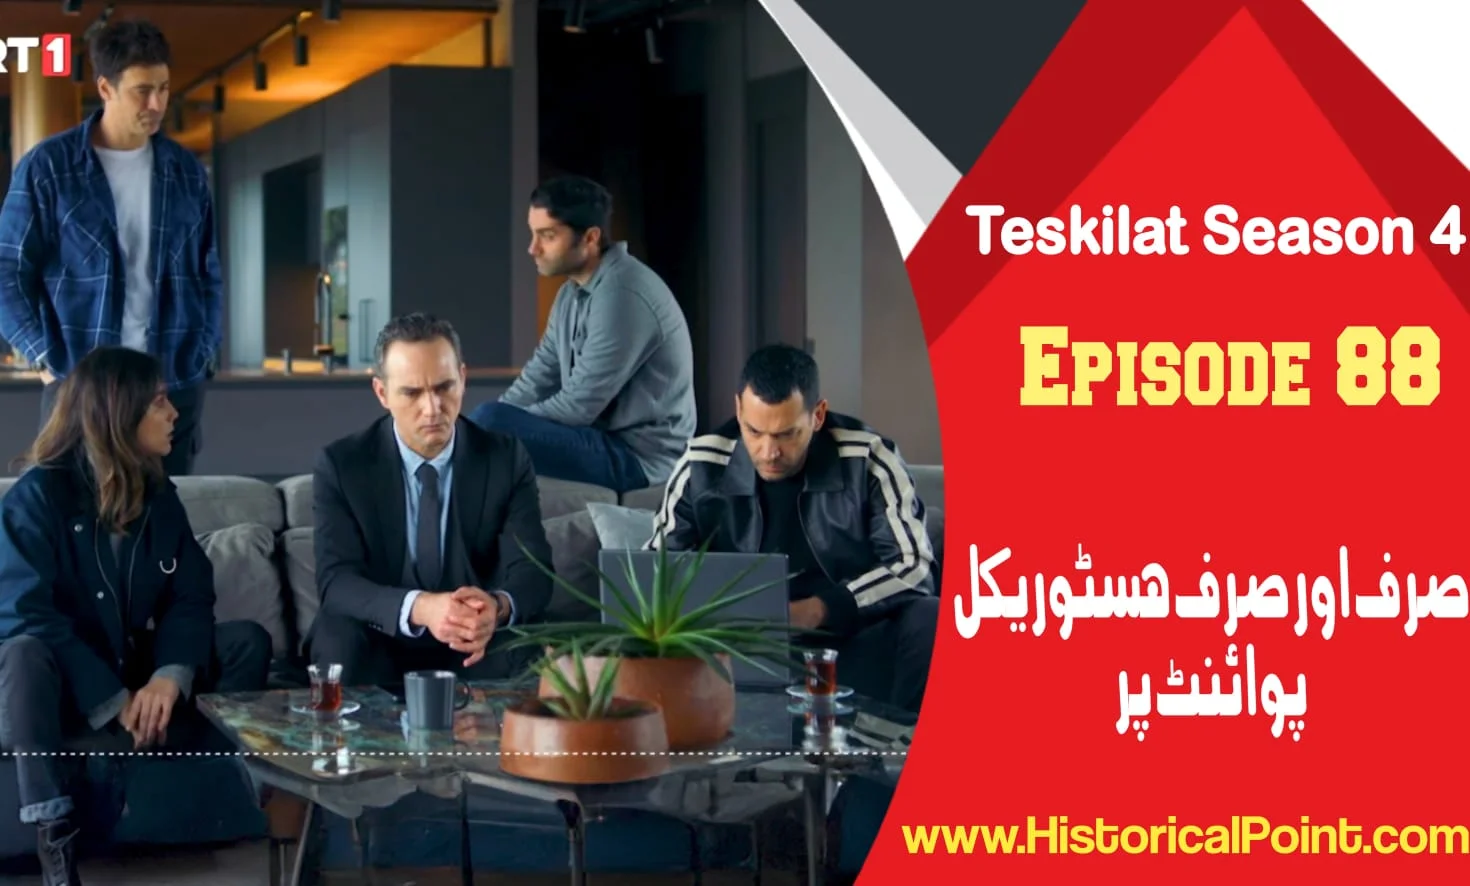 Teskilat Episode 88 in Urdu